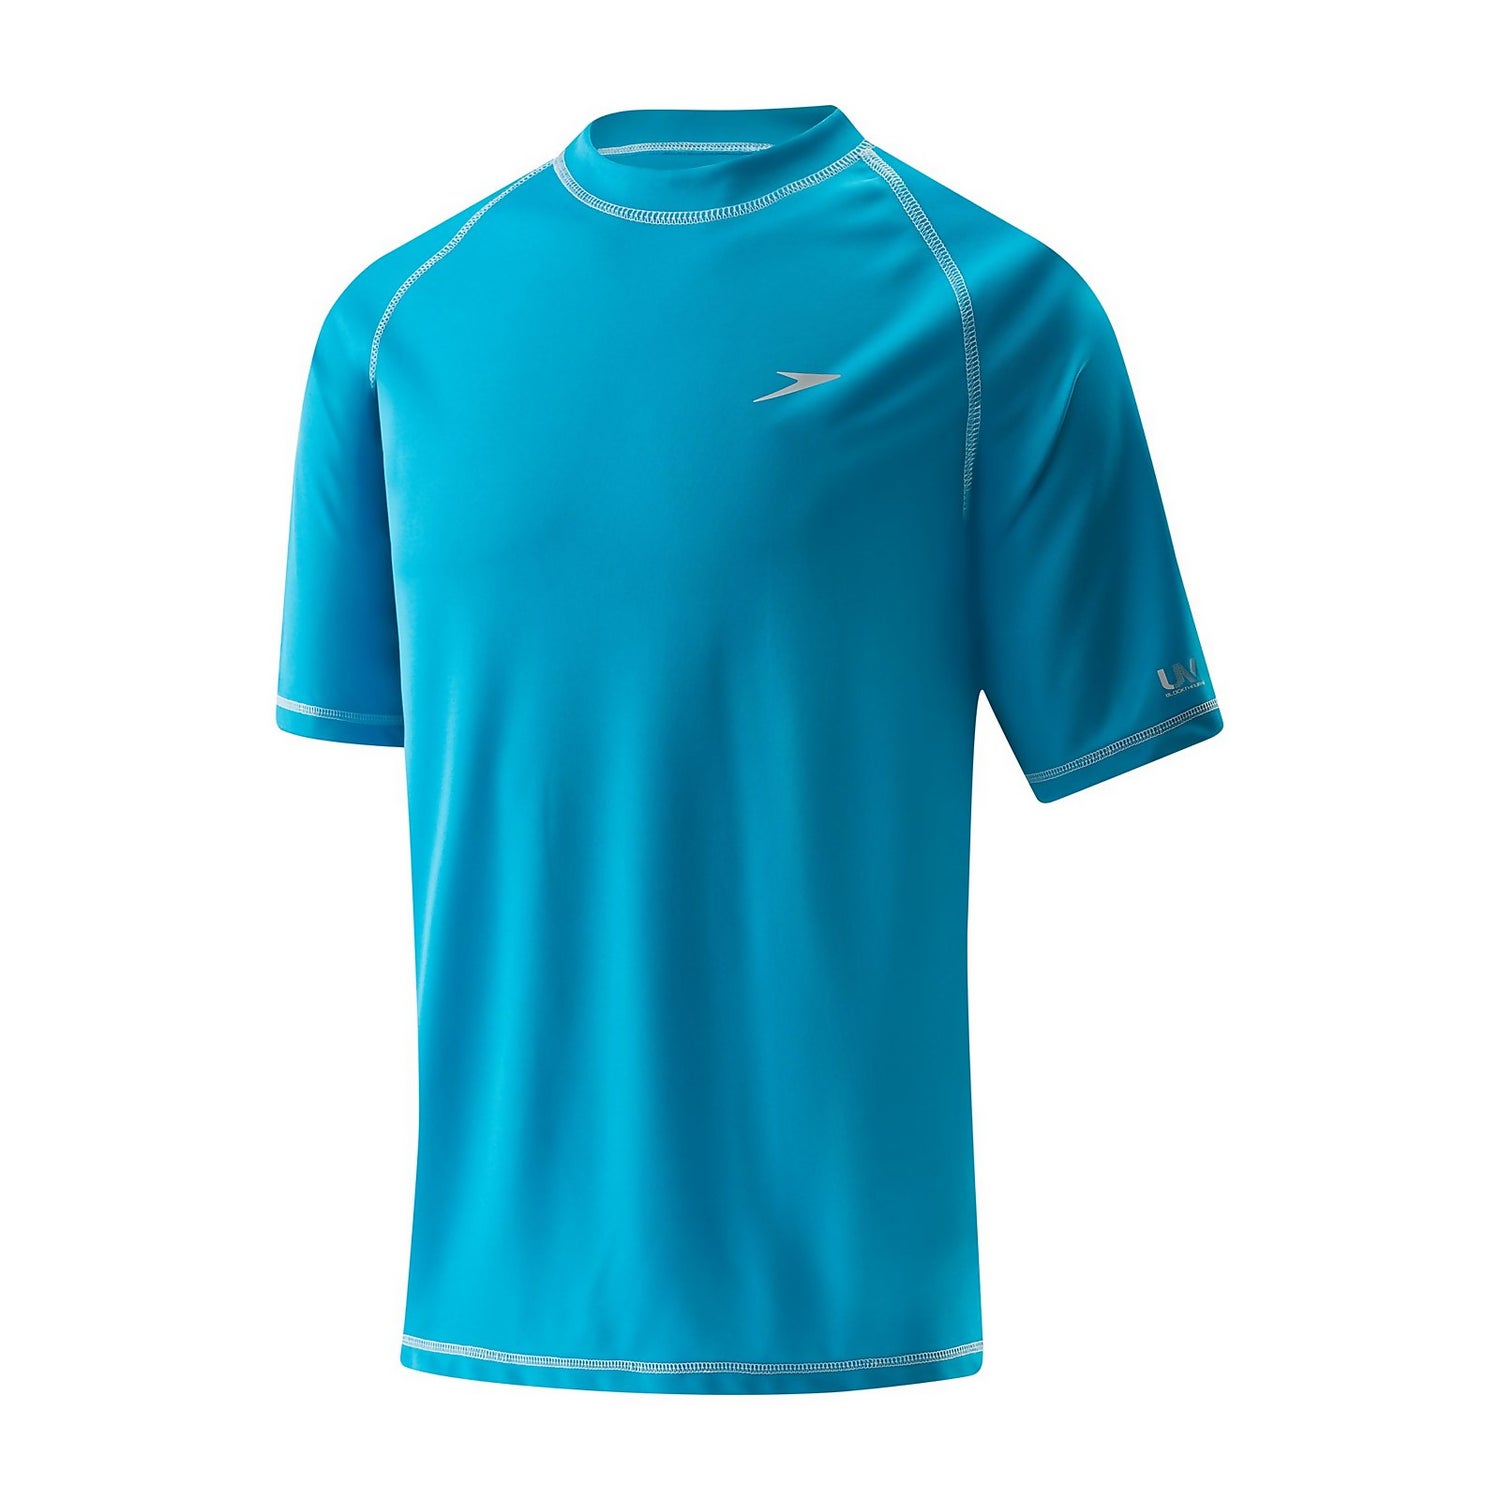 Speedo Men's Uv Swim Shirt Short Sleeve Loose Fit Easy Tee-Discontinued  price in UAE,  UAE